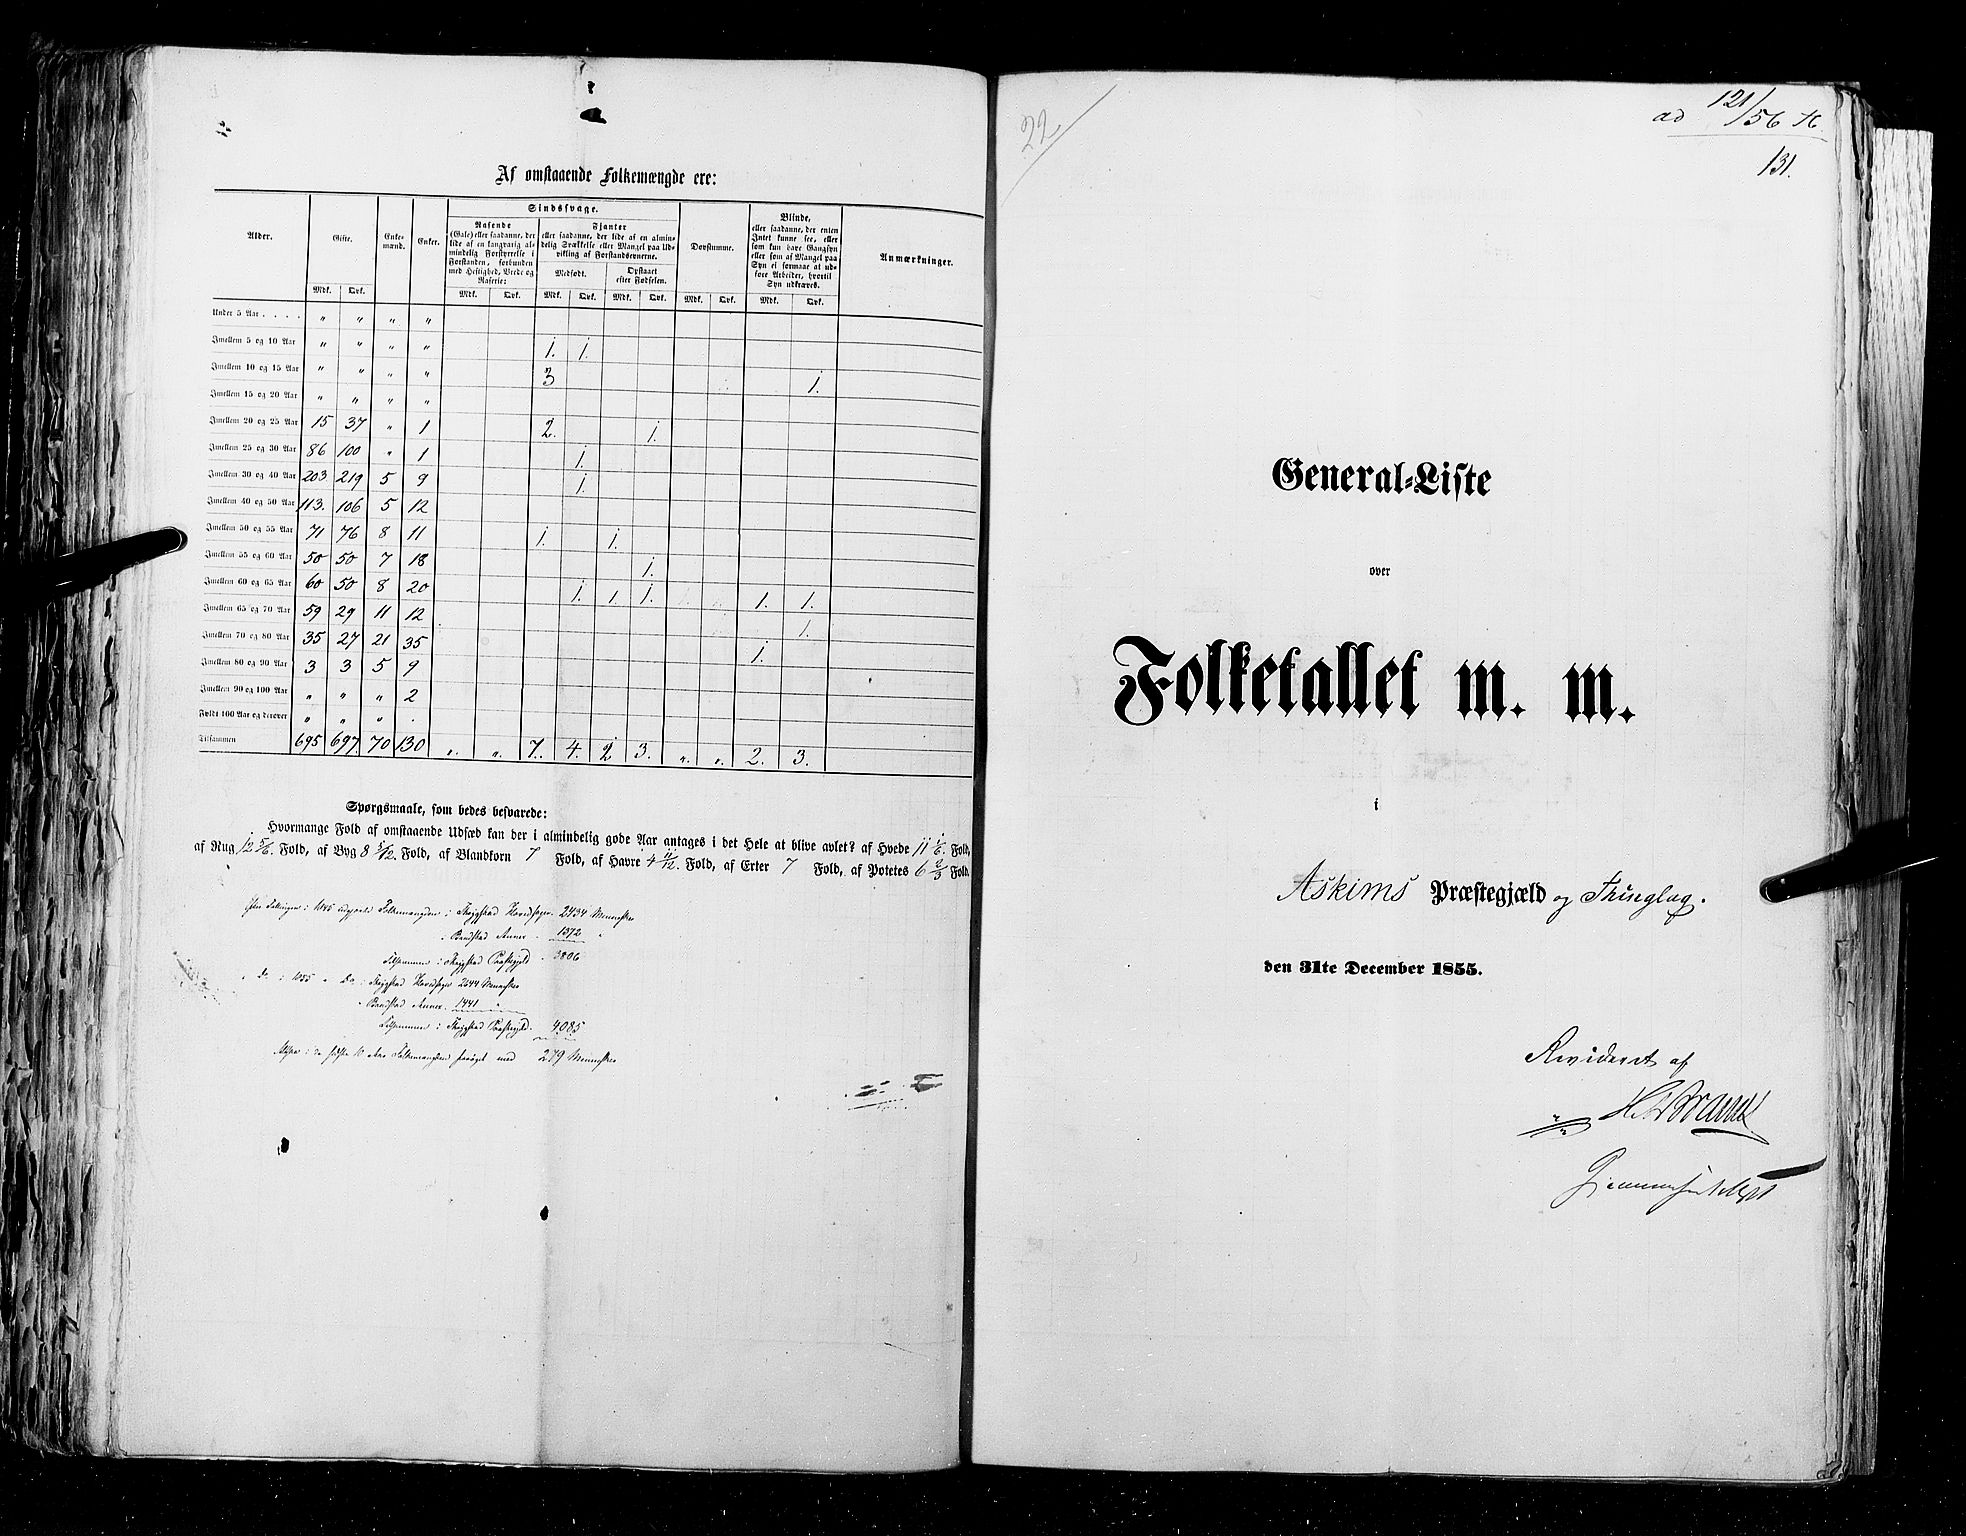 RA, Folketellingen 1855, bind 1: Akershus amt, Smålenenes amt og Hedemarken amt, 1855, s. 131